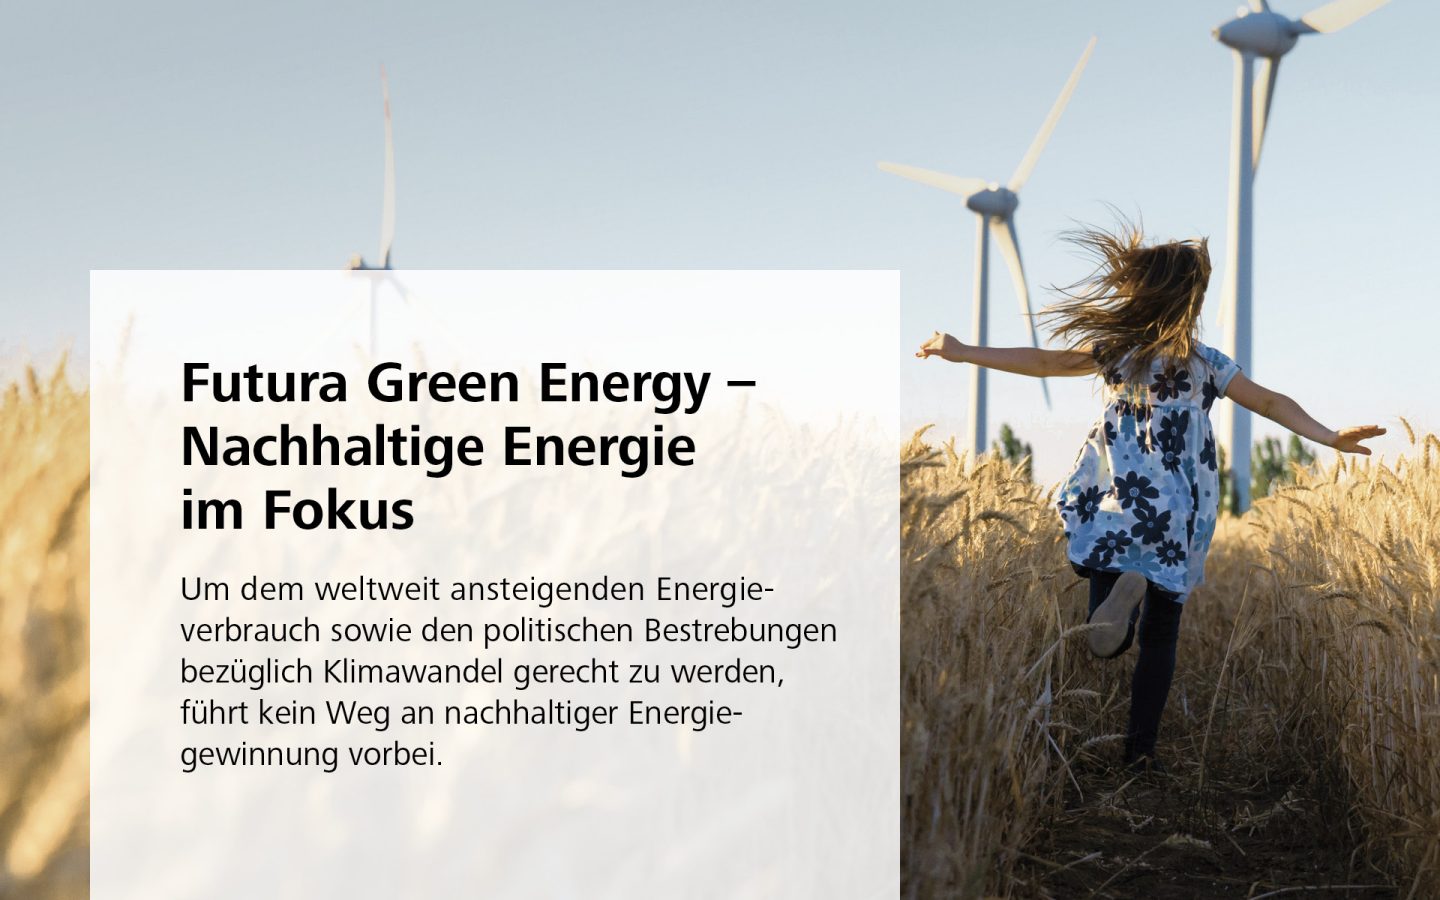 Futura Green Energy – Nachhaltige Energie im Fokus